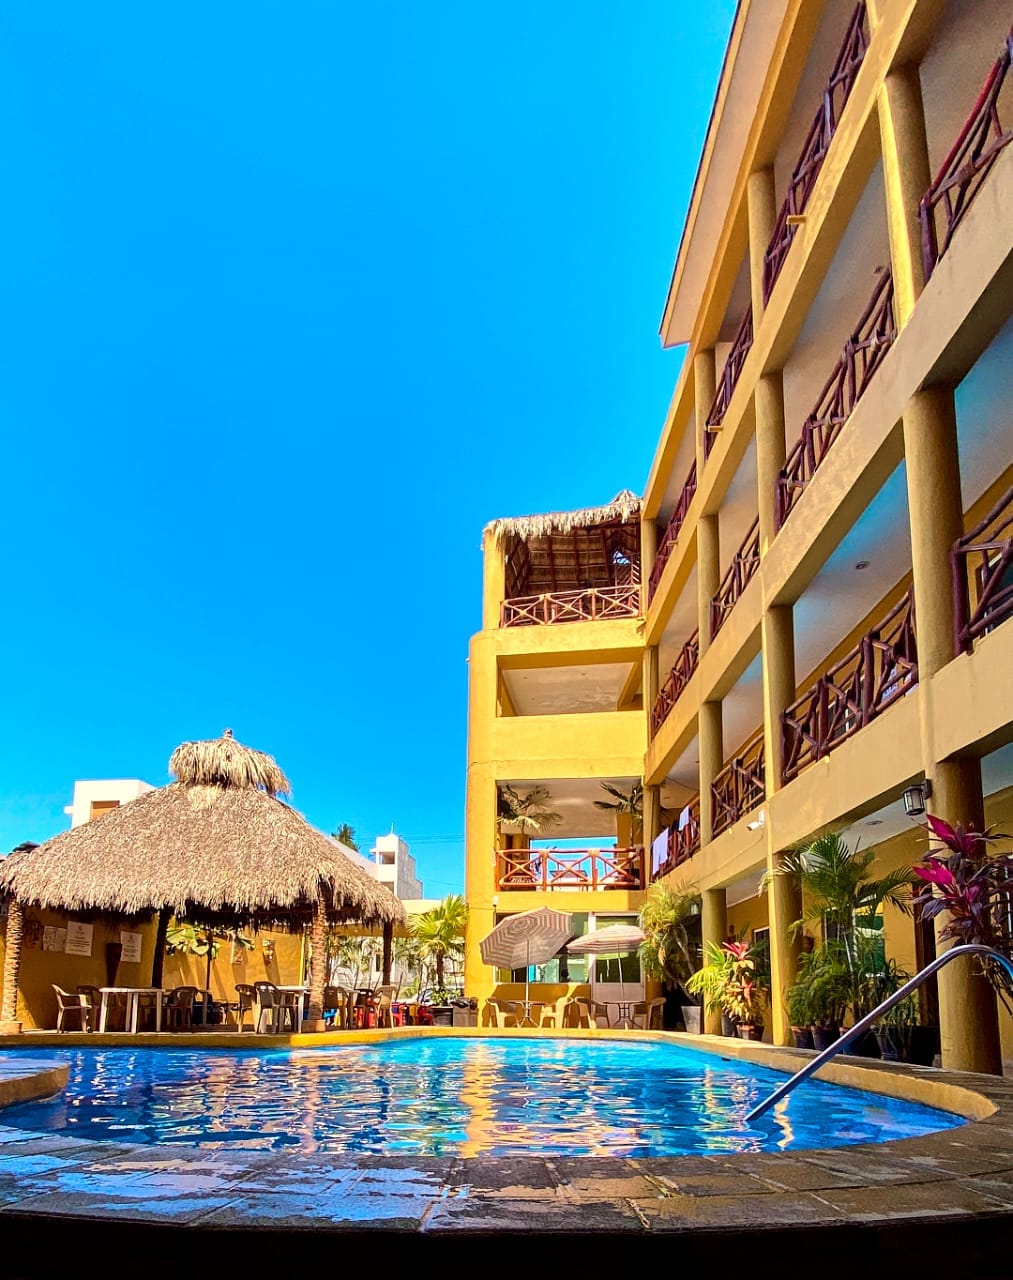 Villas del Coral Bungalows & Hotel, Los Ayala